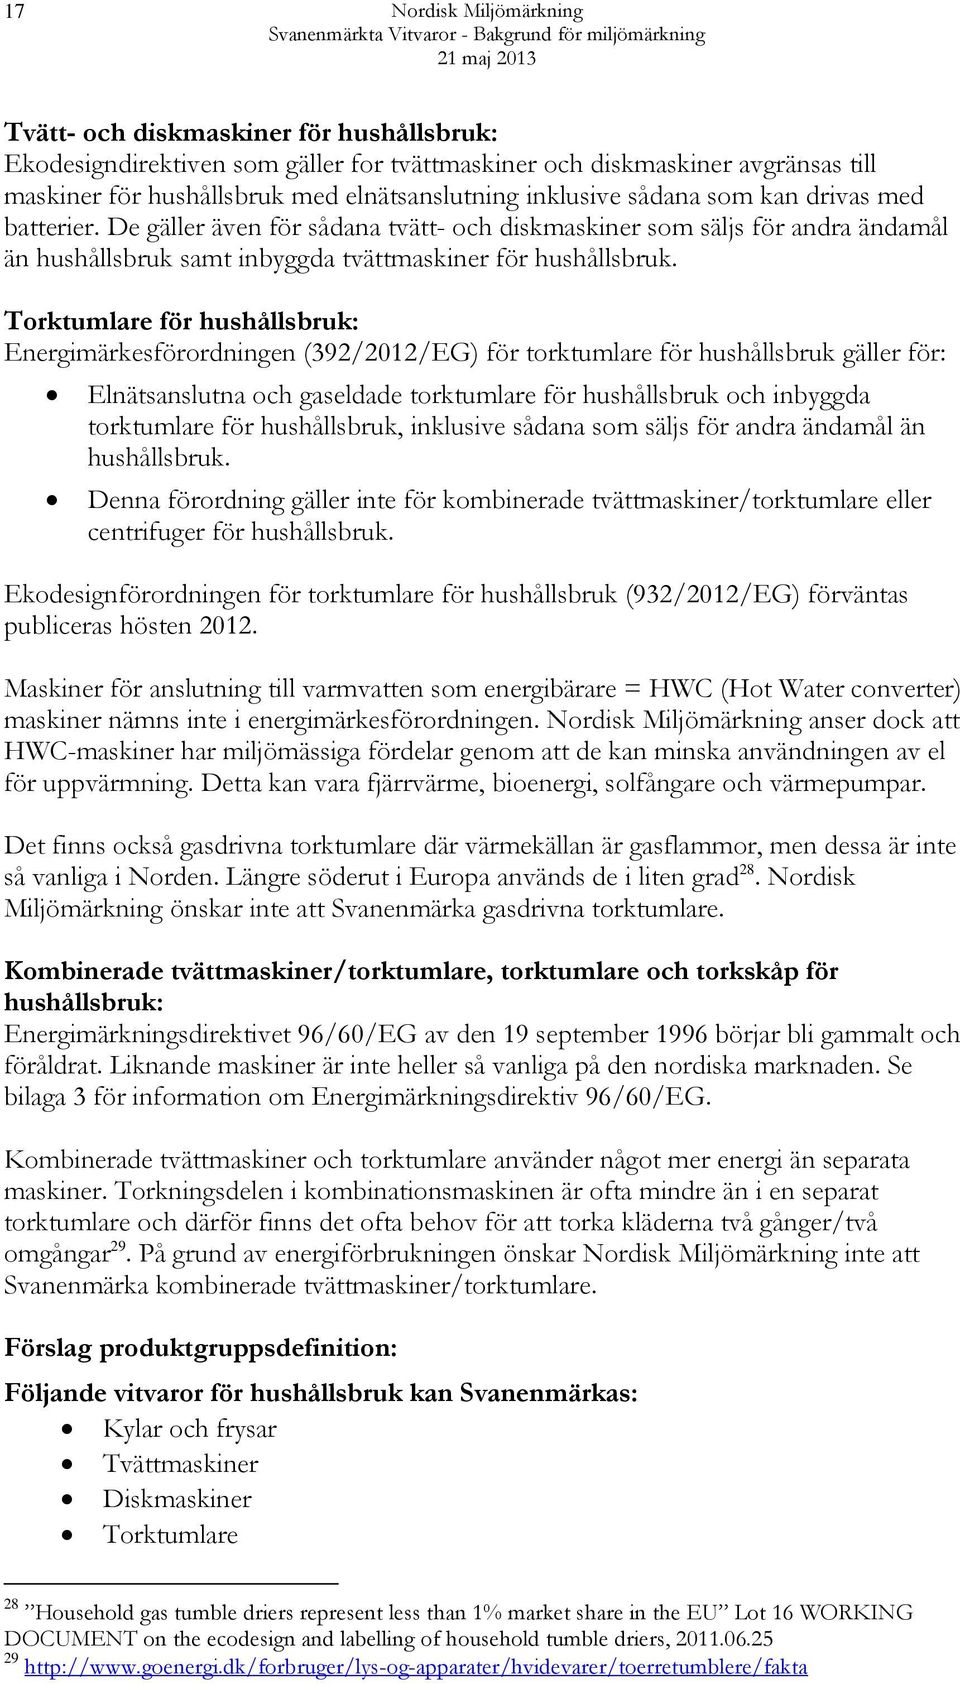 Torktumlare för hushållsbruk: Energimärkesförordningen (392/2012/EG) för torktumlare för hushållsbruk gäller för: Elnätsanslutna och gaseldade torktumlare för hushållsbruk och inbyggda torktumlare